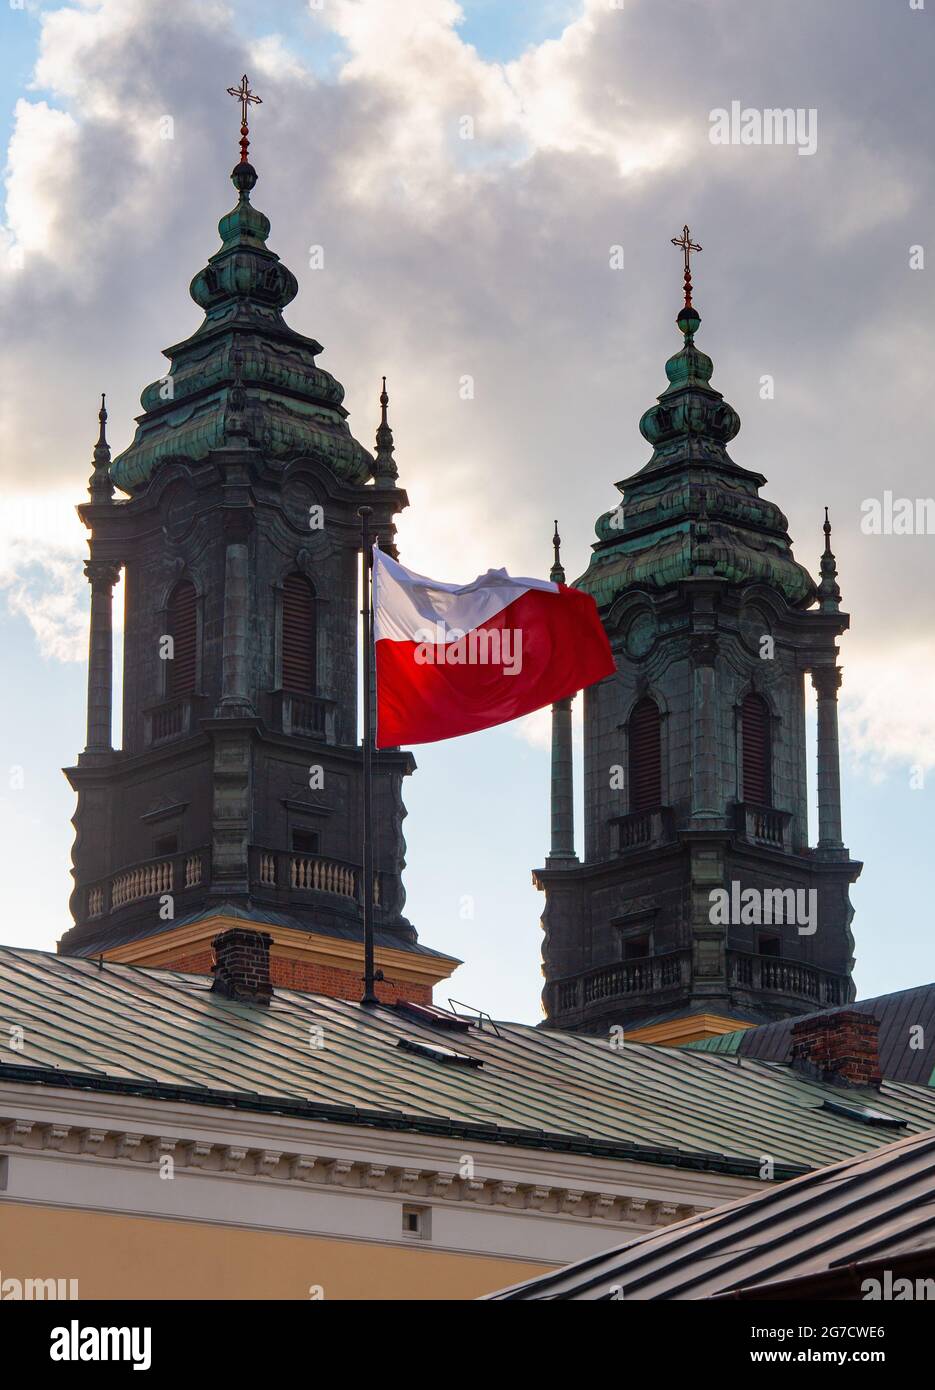 Bandiera polacca sventolante sulla cupola dell'edificio. Polonia. Poznan. Foto Stock